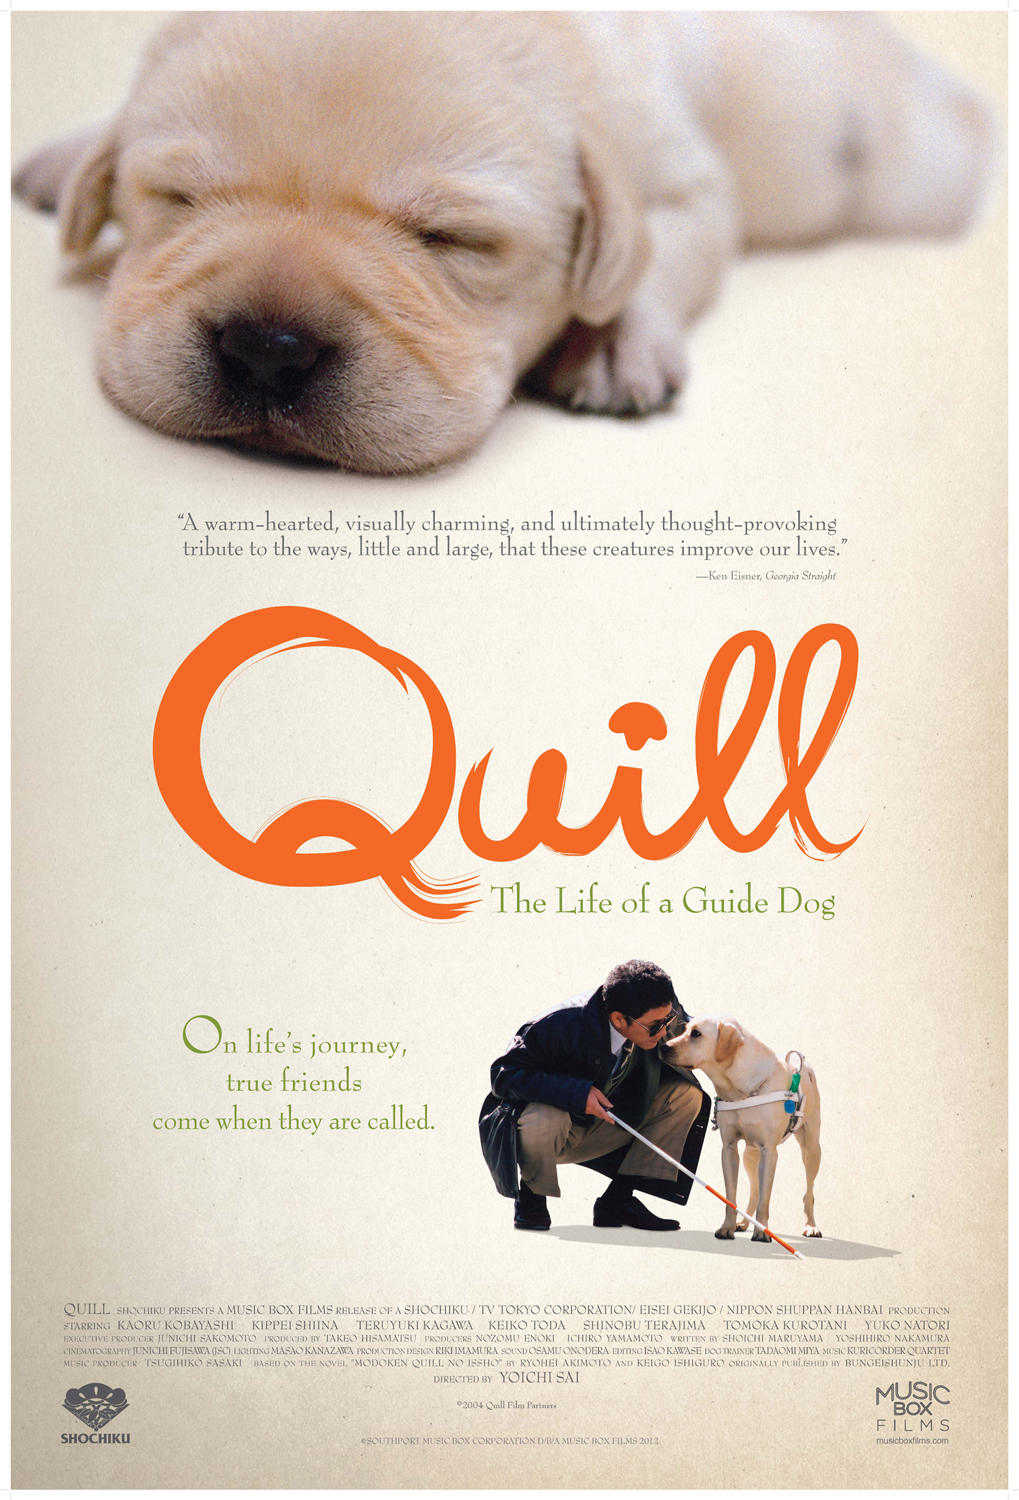 ดูหนังออนไลน์ฟรี Quill The Life of a Guide Dog (2004) โฮ่ง (ฮับ) เจ้าตัวเนี้ยซี้ 100%